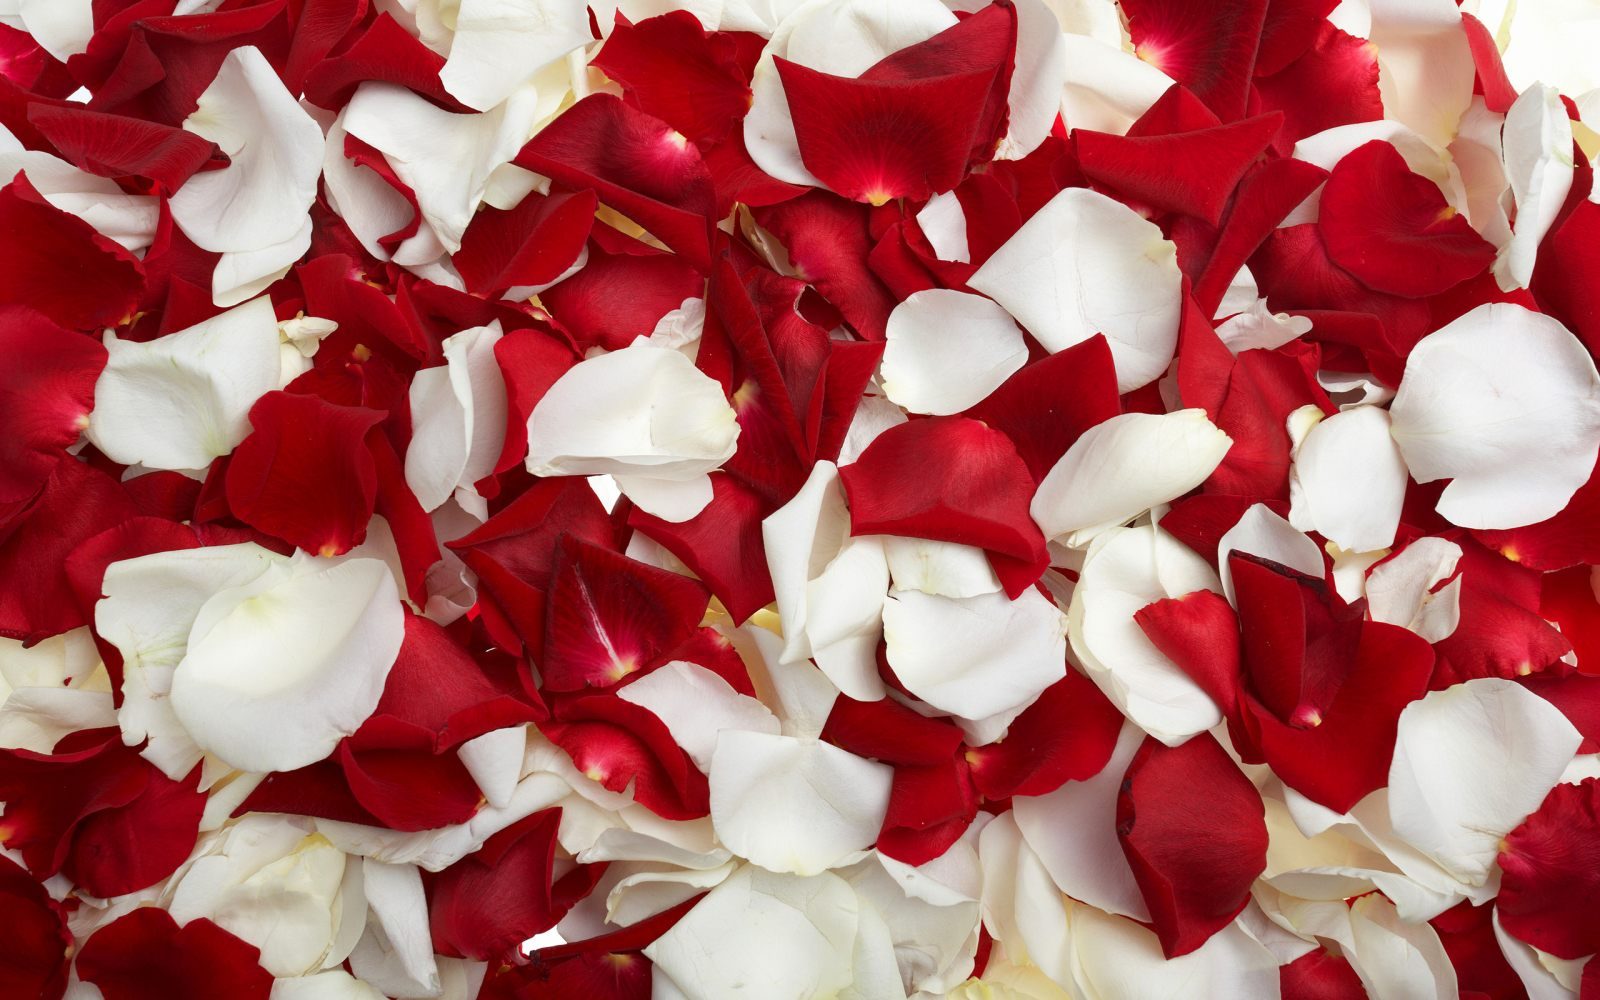 Pétalos de rosas blancas y rojas